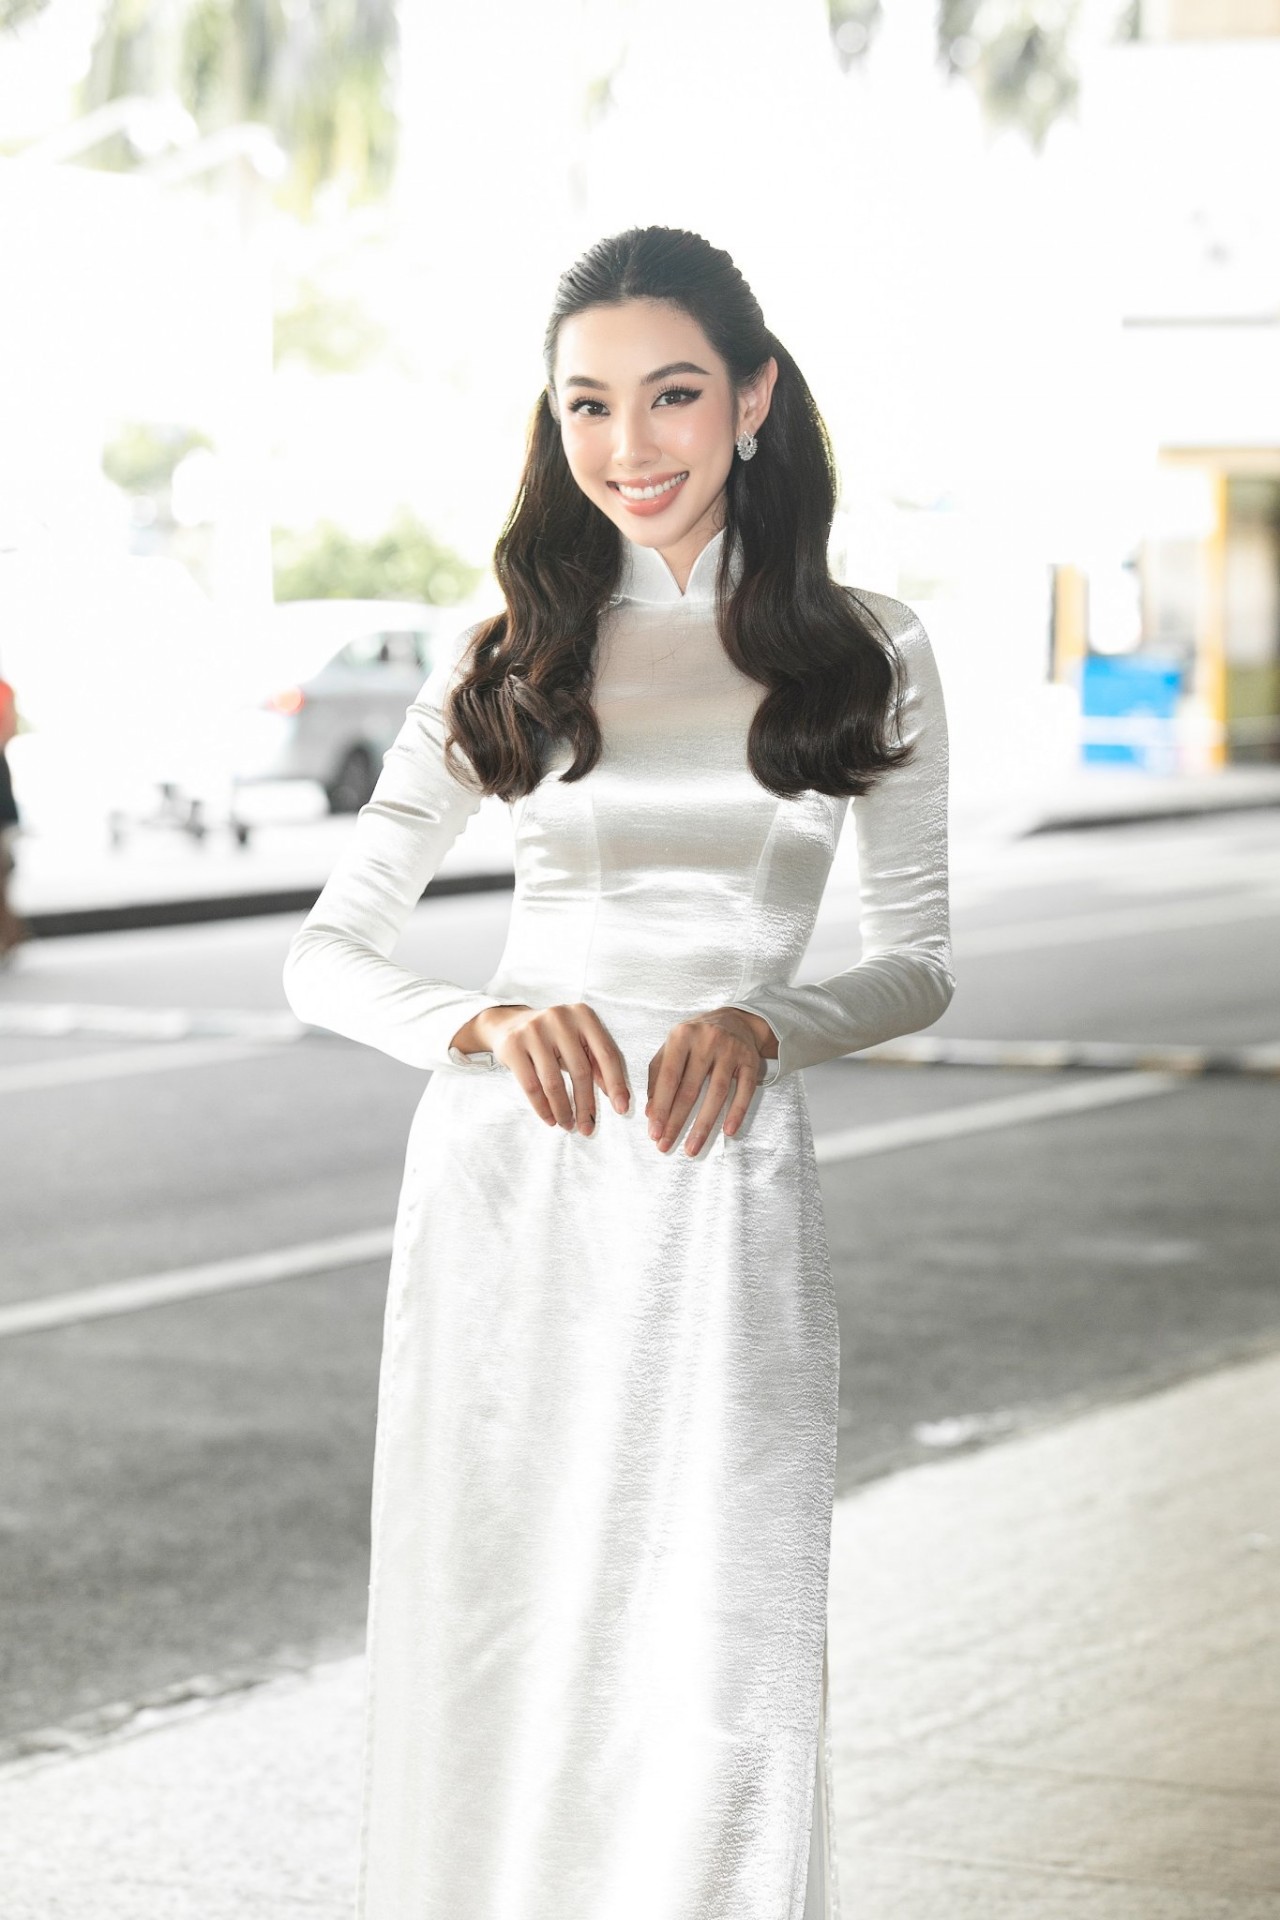 Hoa hậu Nguyễn Thúc Thùy Tiên đẹp tinh khôi trong tà áo dài trắng